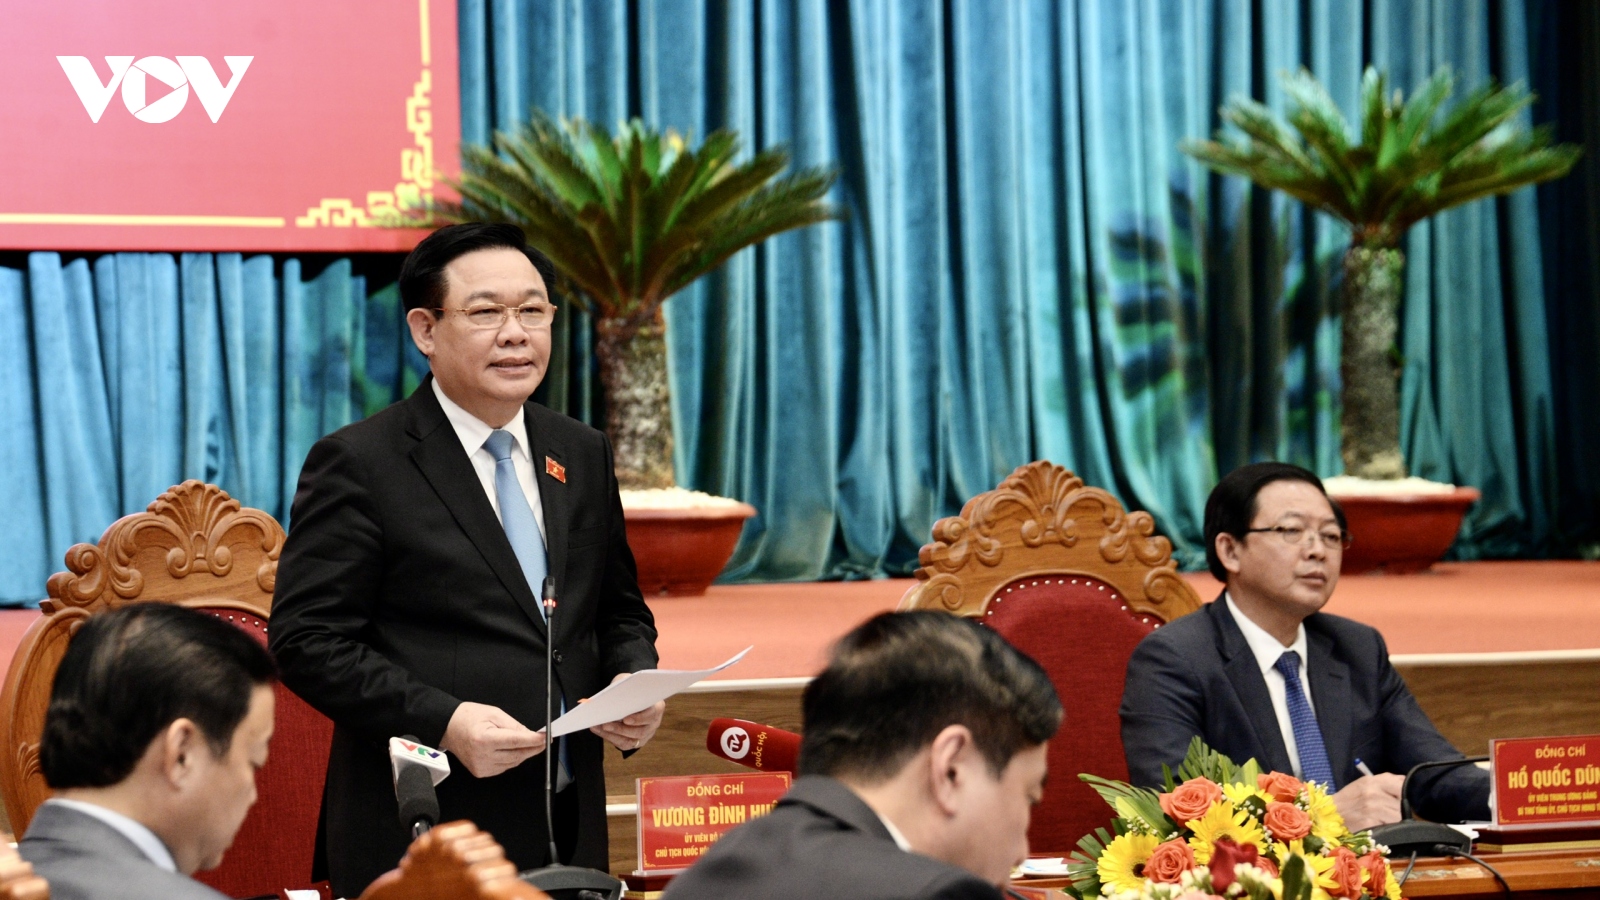 Chủ tịch Quốc hội: Bình Định cần điều chỉnh để thu hút đầu tư nhiều hơn